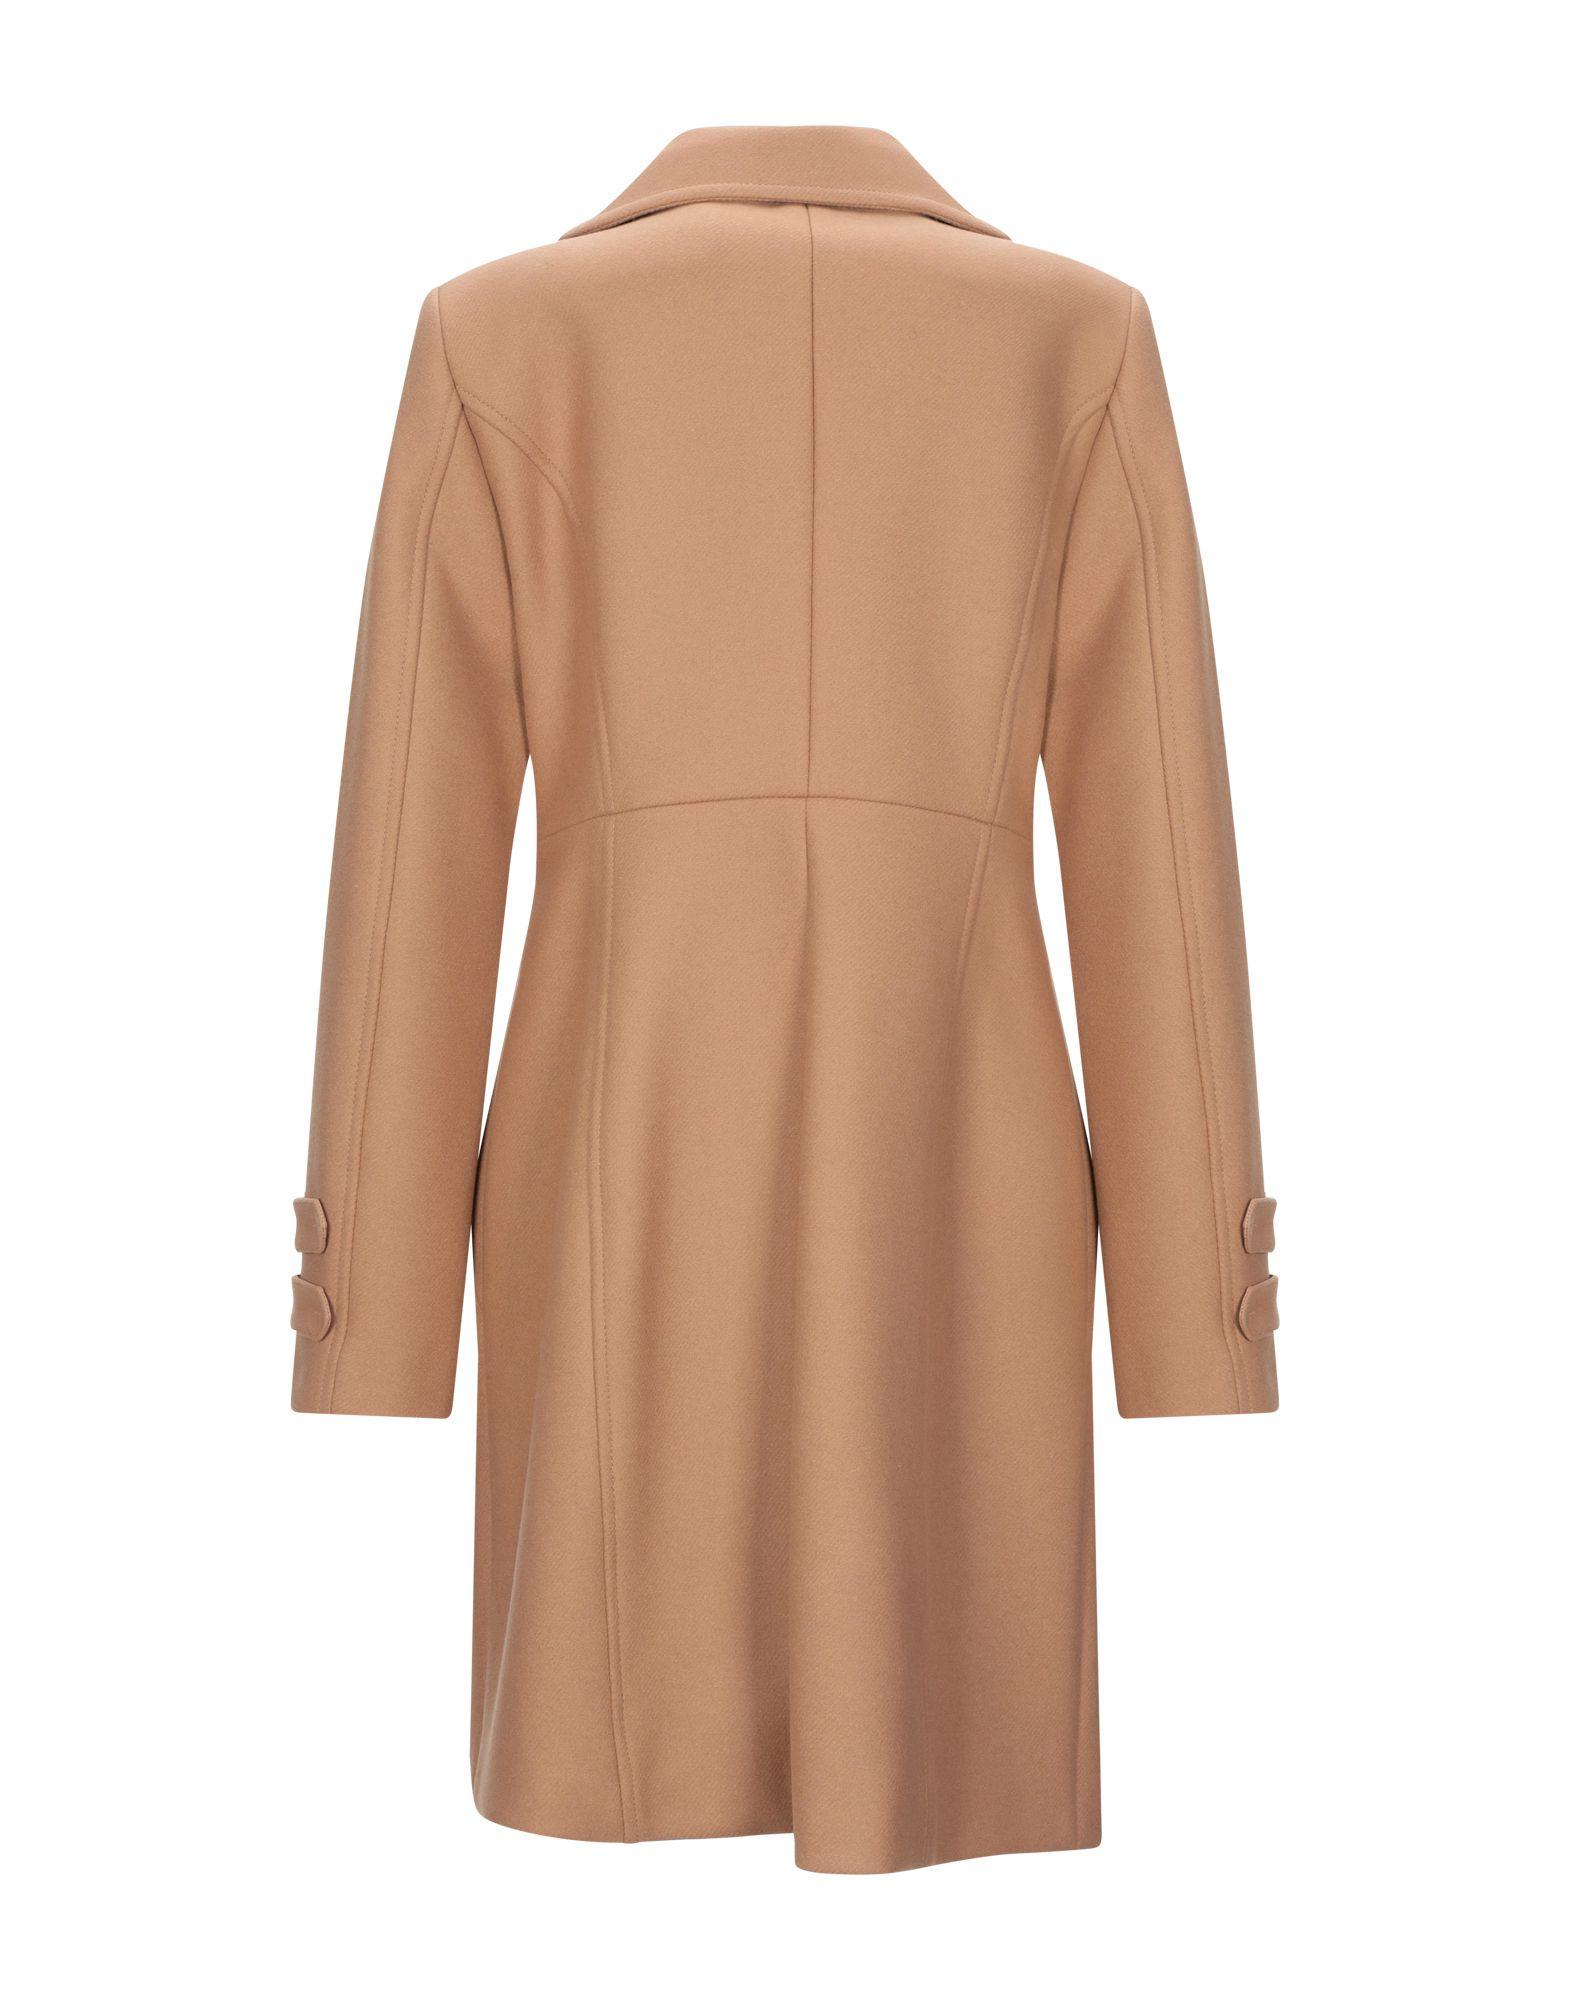 Liu Jo Wool Coat in Camel (Brown) - Lyst